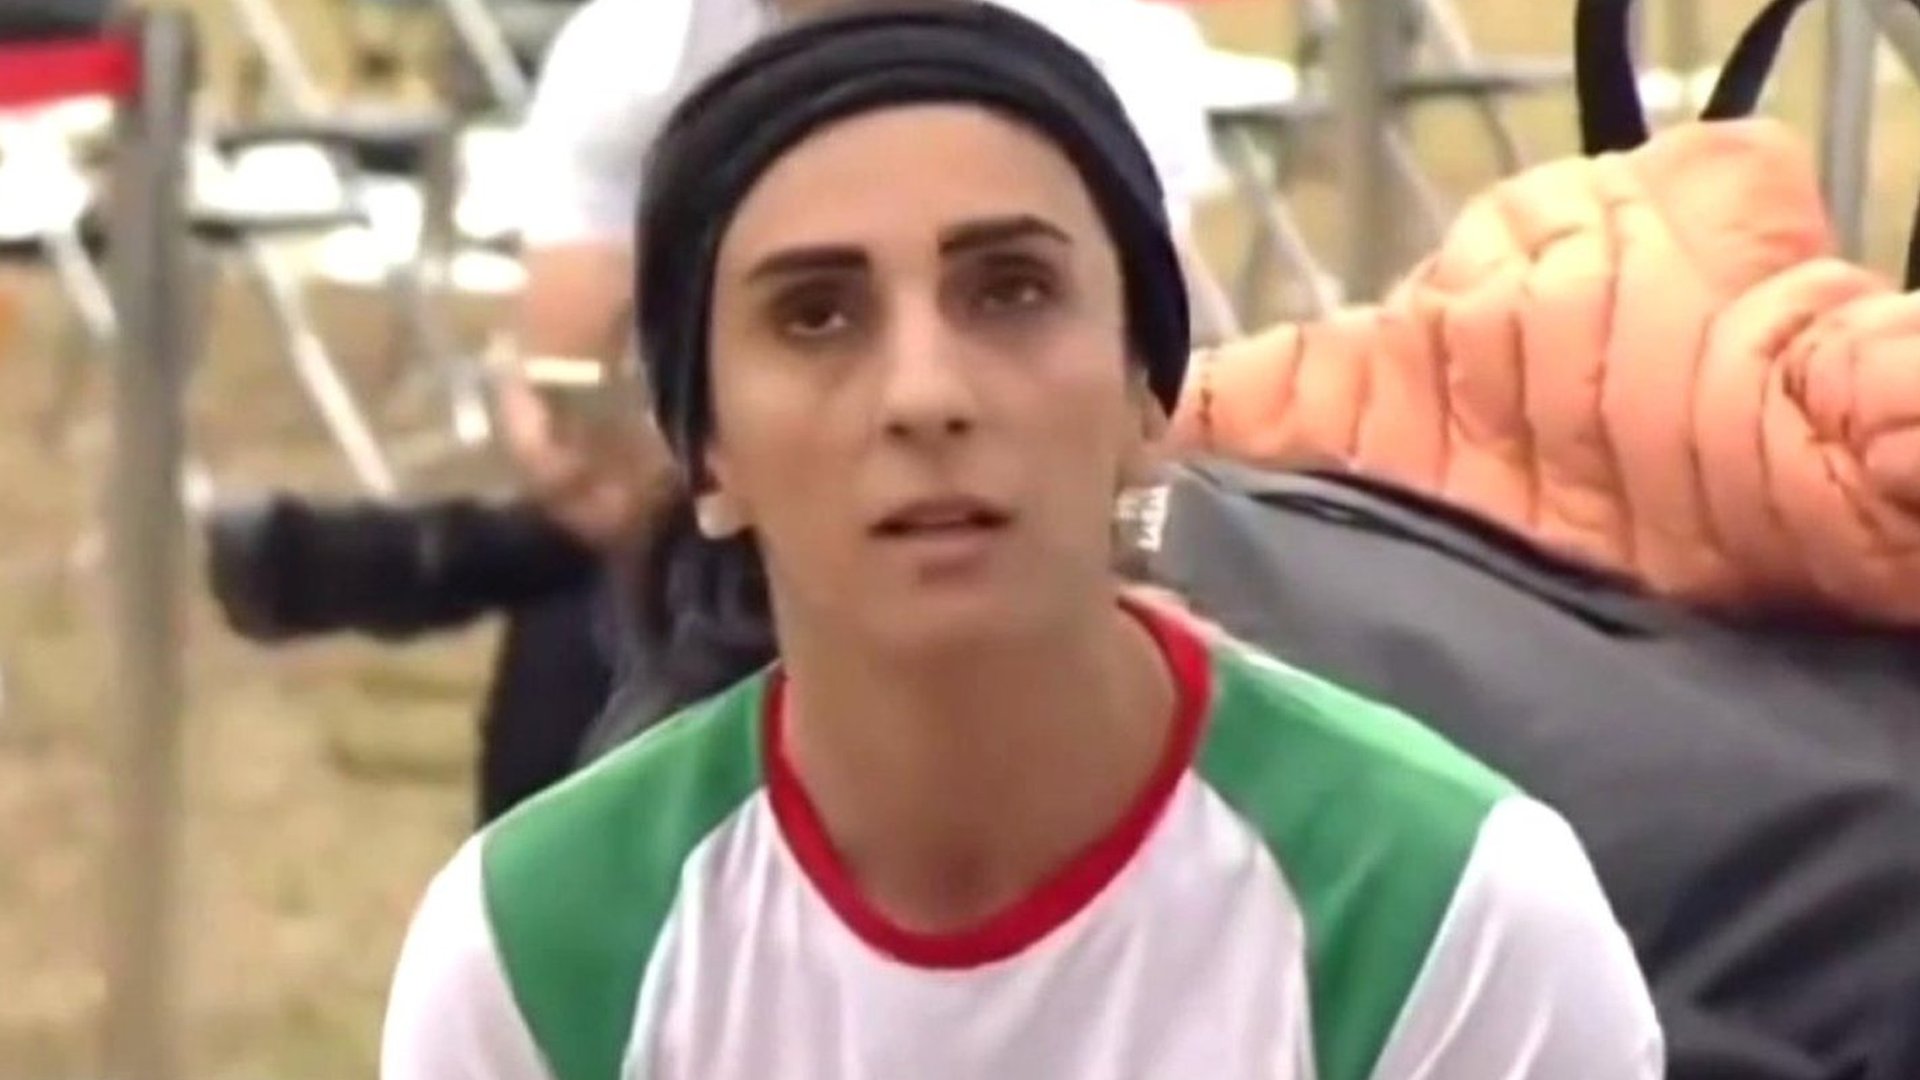 Atleta iraniana Elnaz Rekabi, que competiu sem o véu, é acolhida como  'heroína' em Teerã